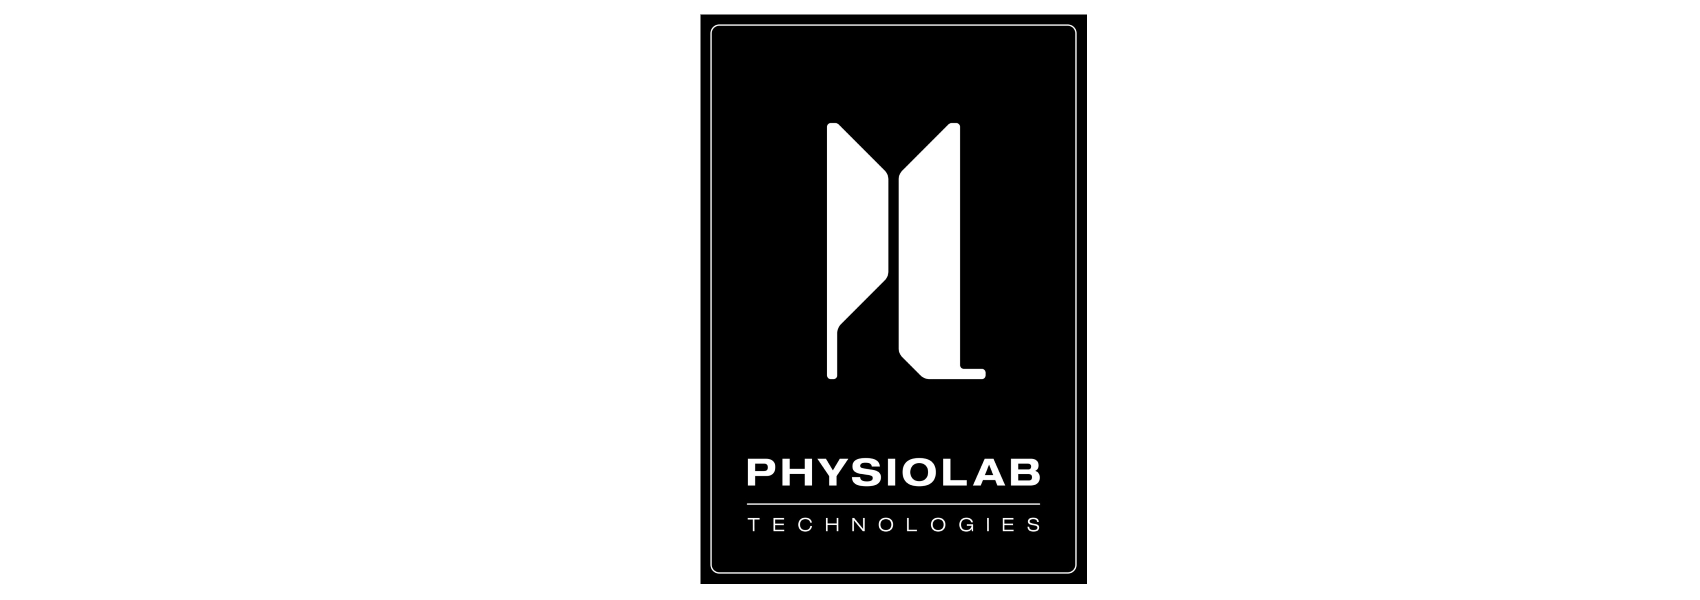 Physiolab Technologies Logo